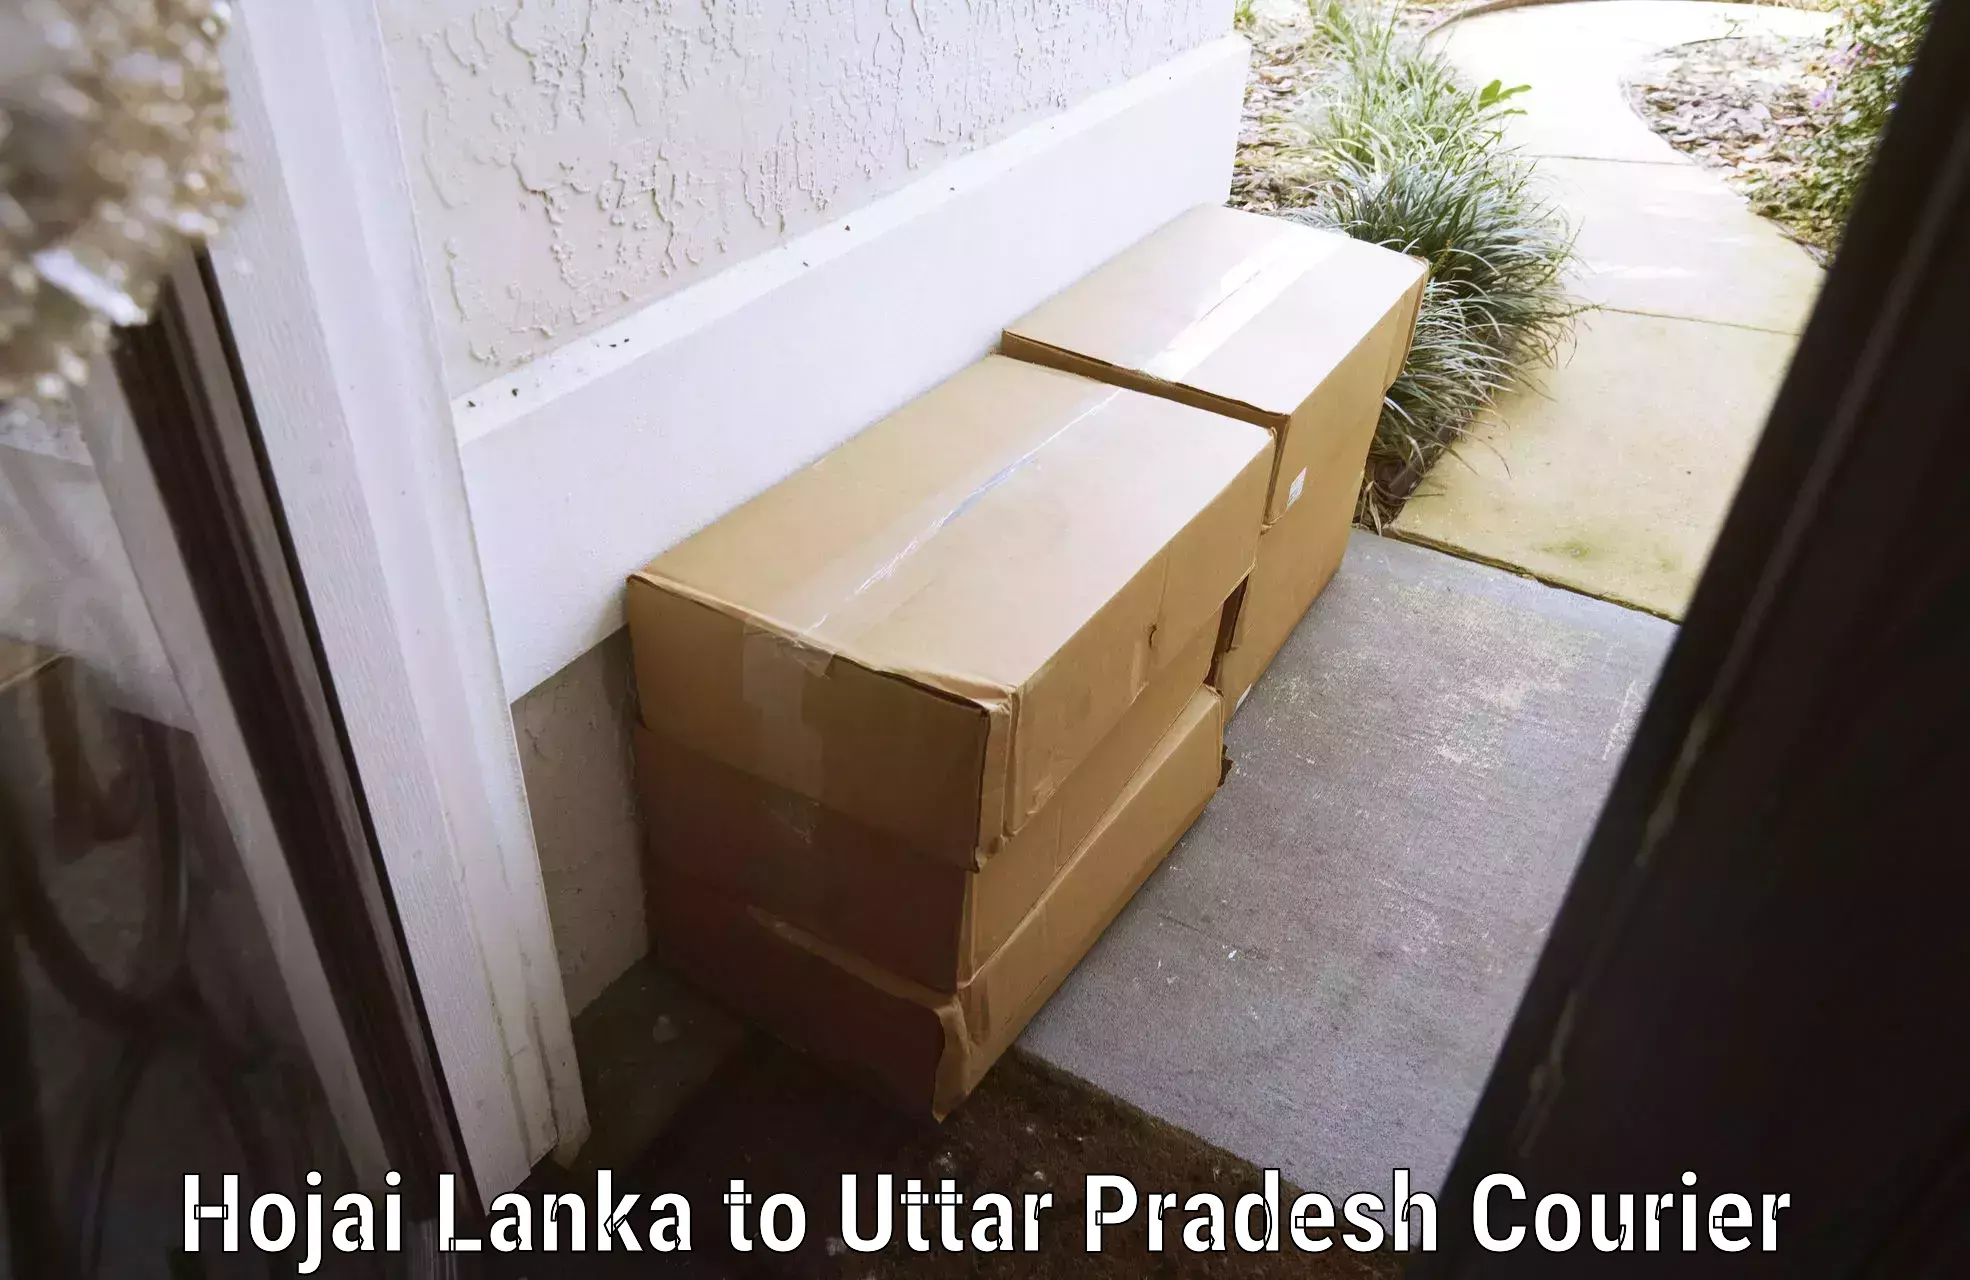 Baggage transport estimate Hojai Lanka to Behat